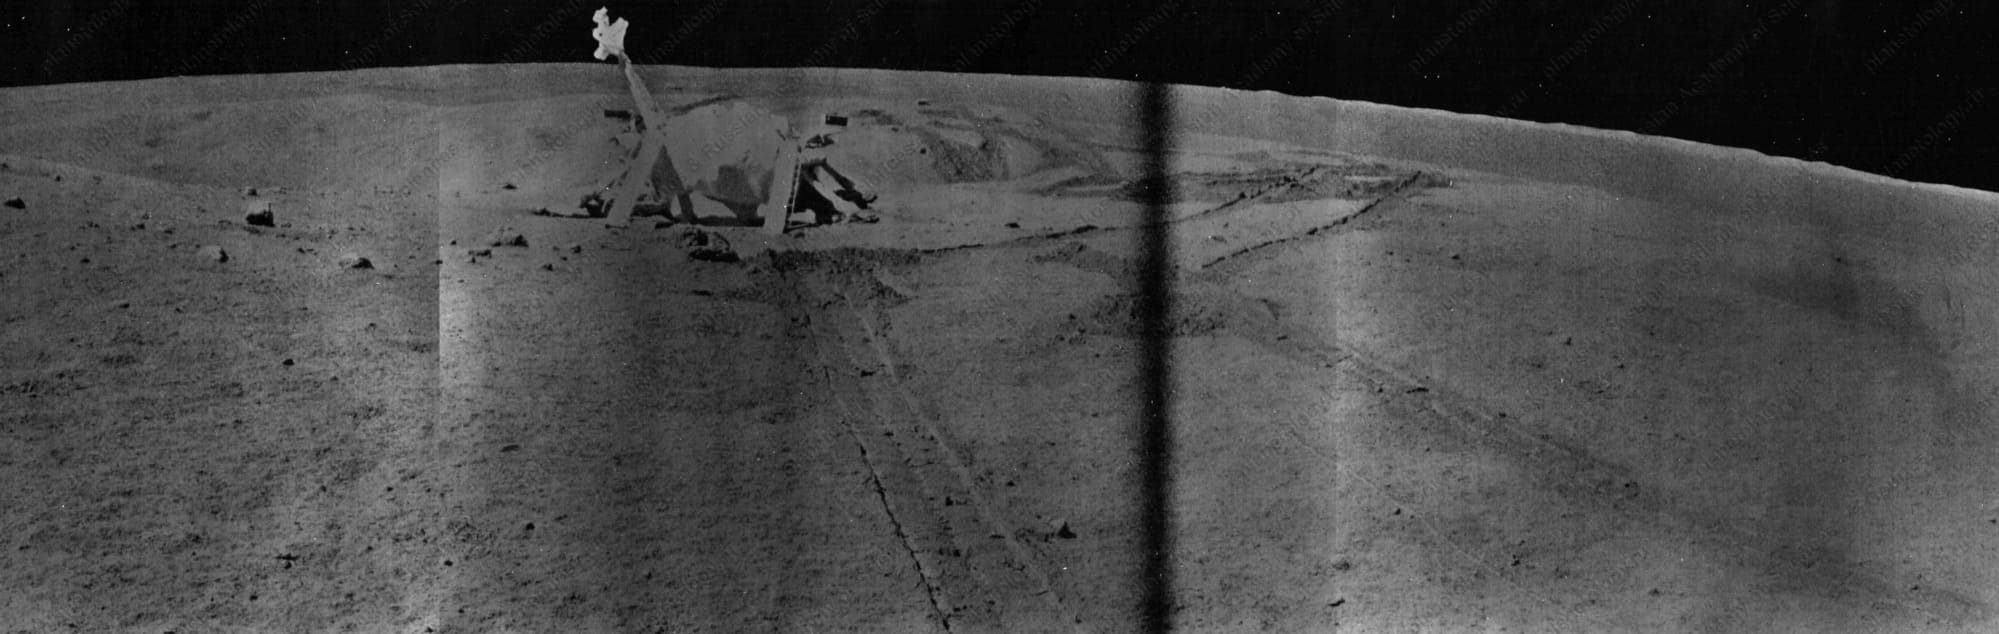 Снимки с поверхности Луны советским луноходом